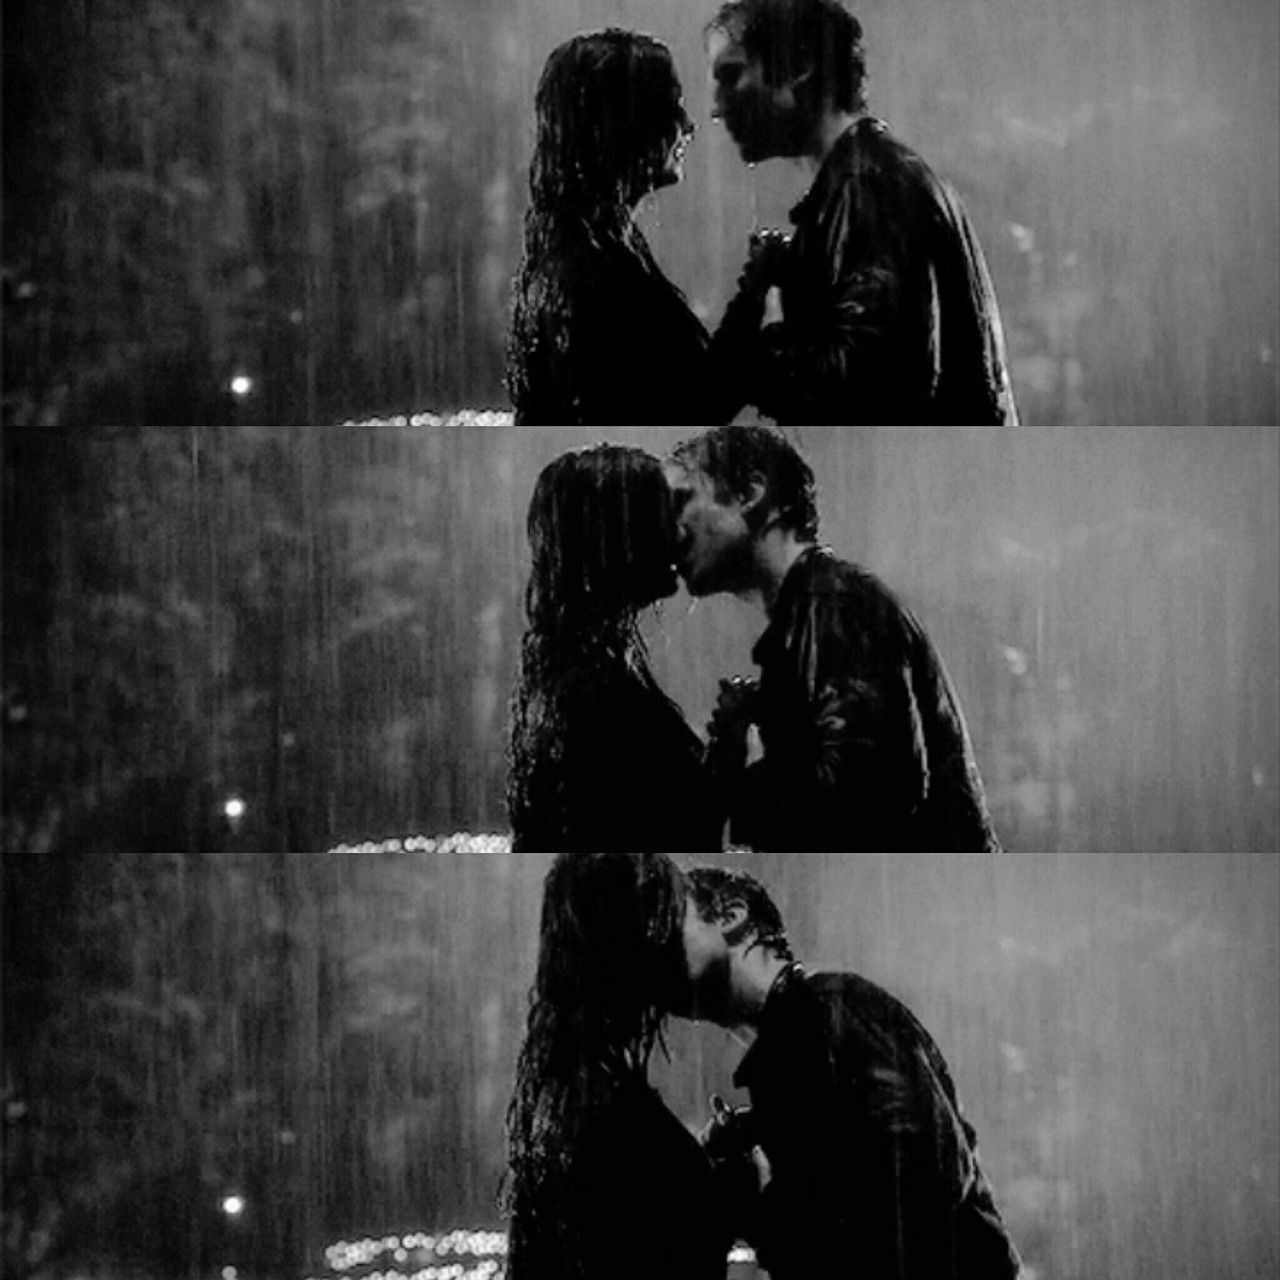 Hôn nhau dưới mưa rất lãng mạn